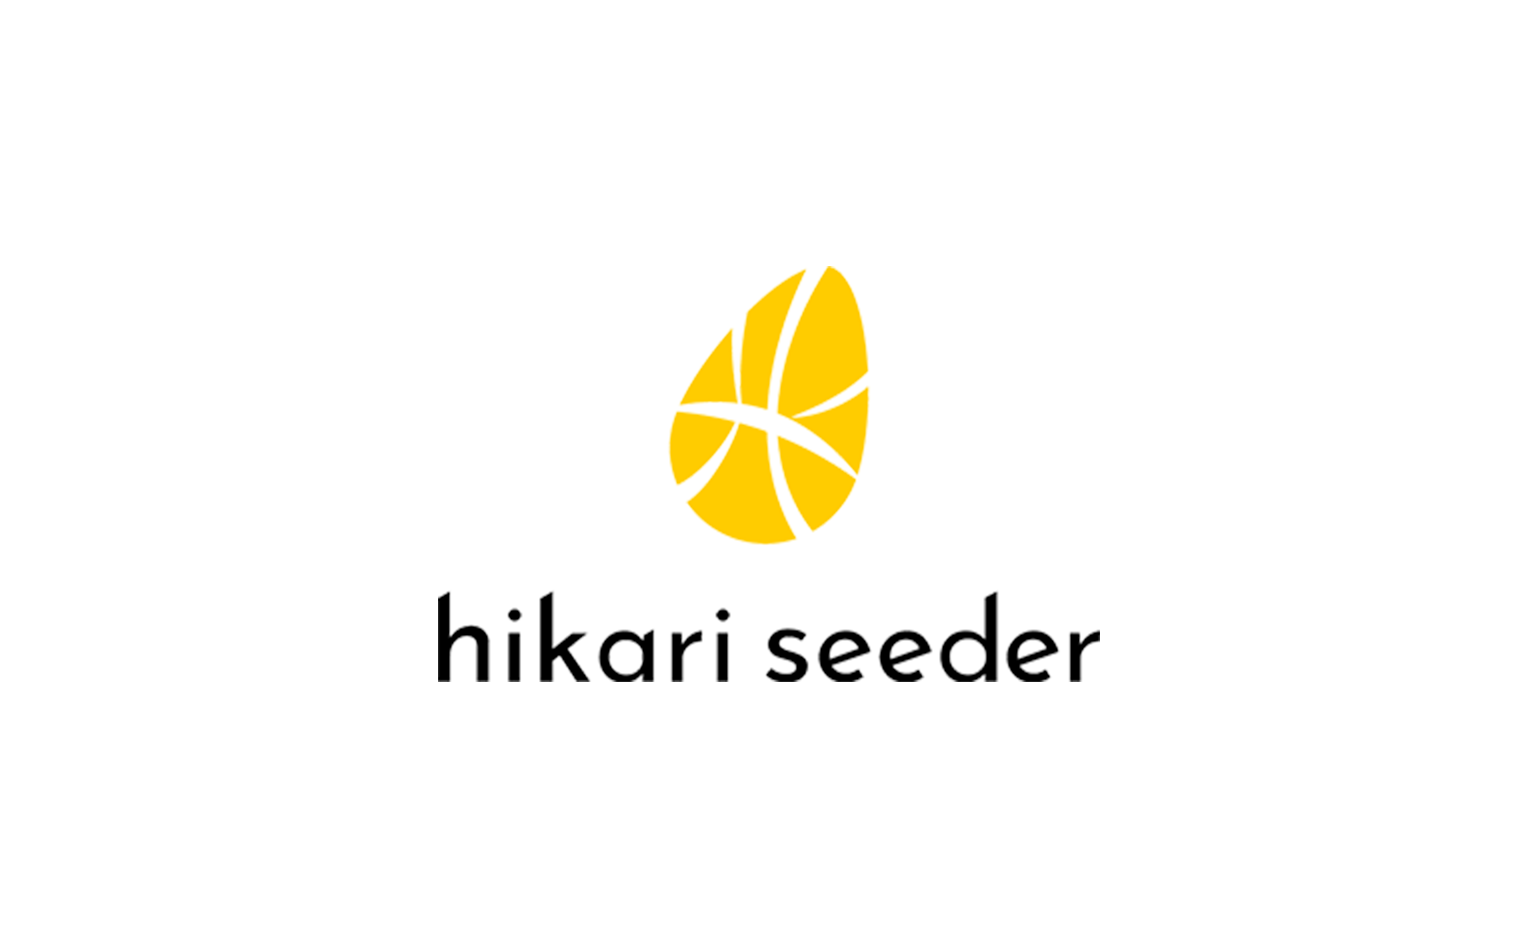 hikari seeder